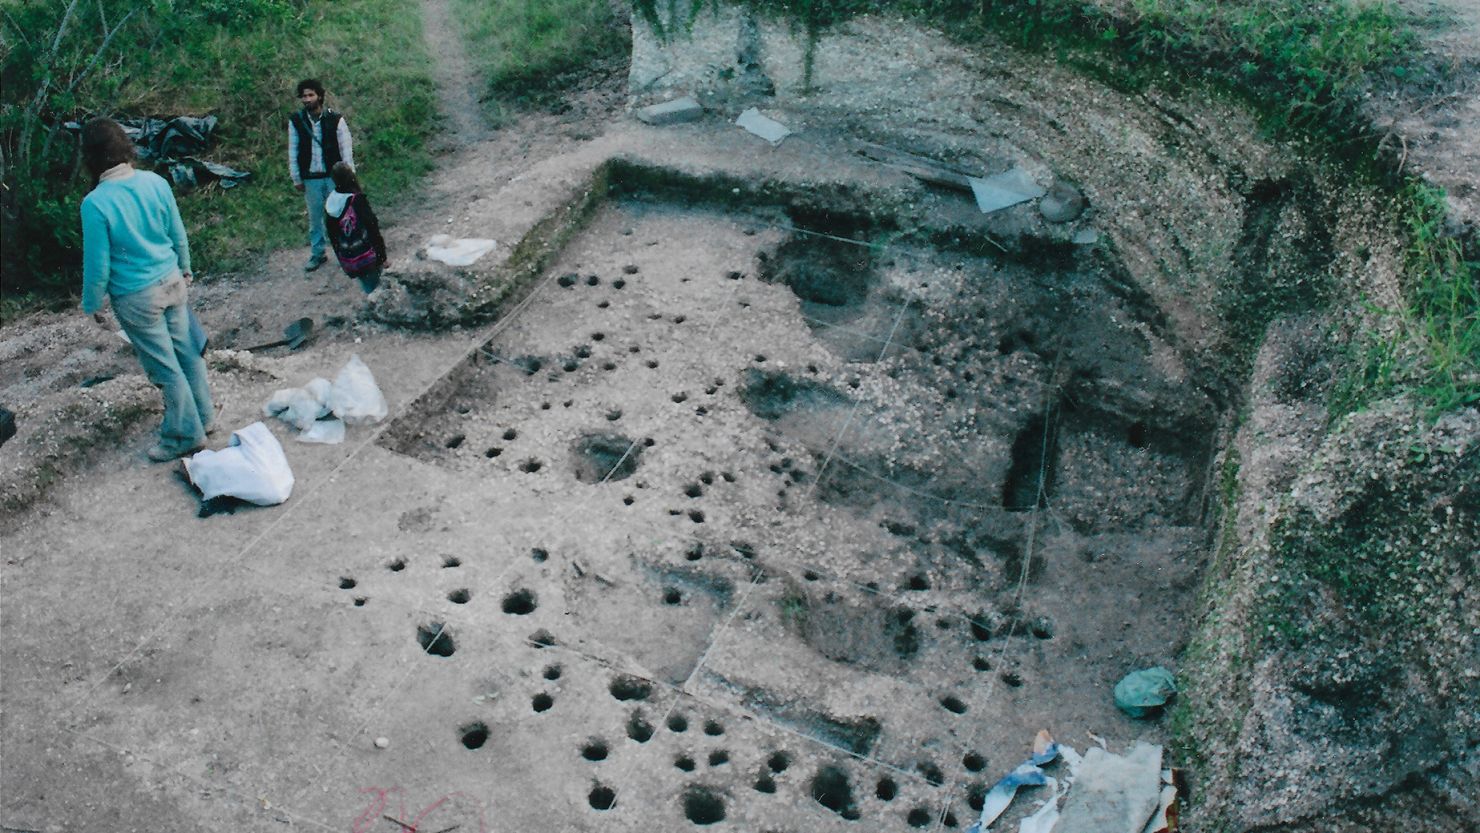 Com o objetivo de rastrear as origens da sífilis, os pesquisadores usaram técnicas de paleopatologia para estudar ossos humanos antigos no sítio Jabuticabeira II, no estado de Santa Catarina.